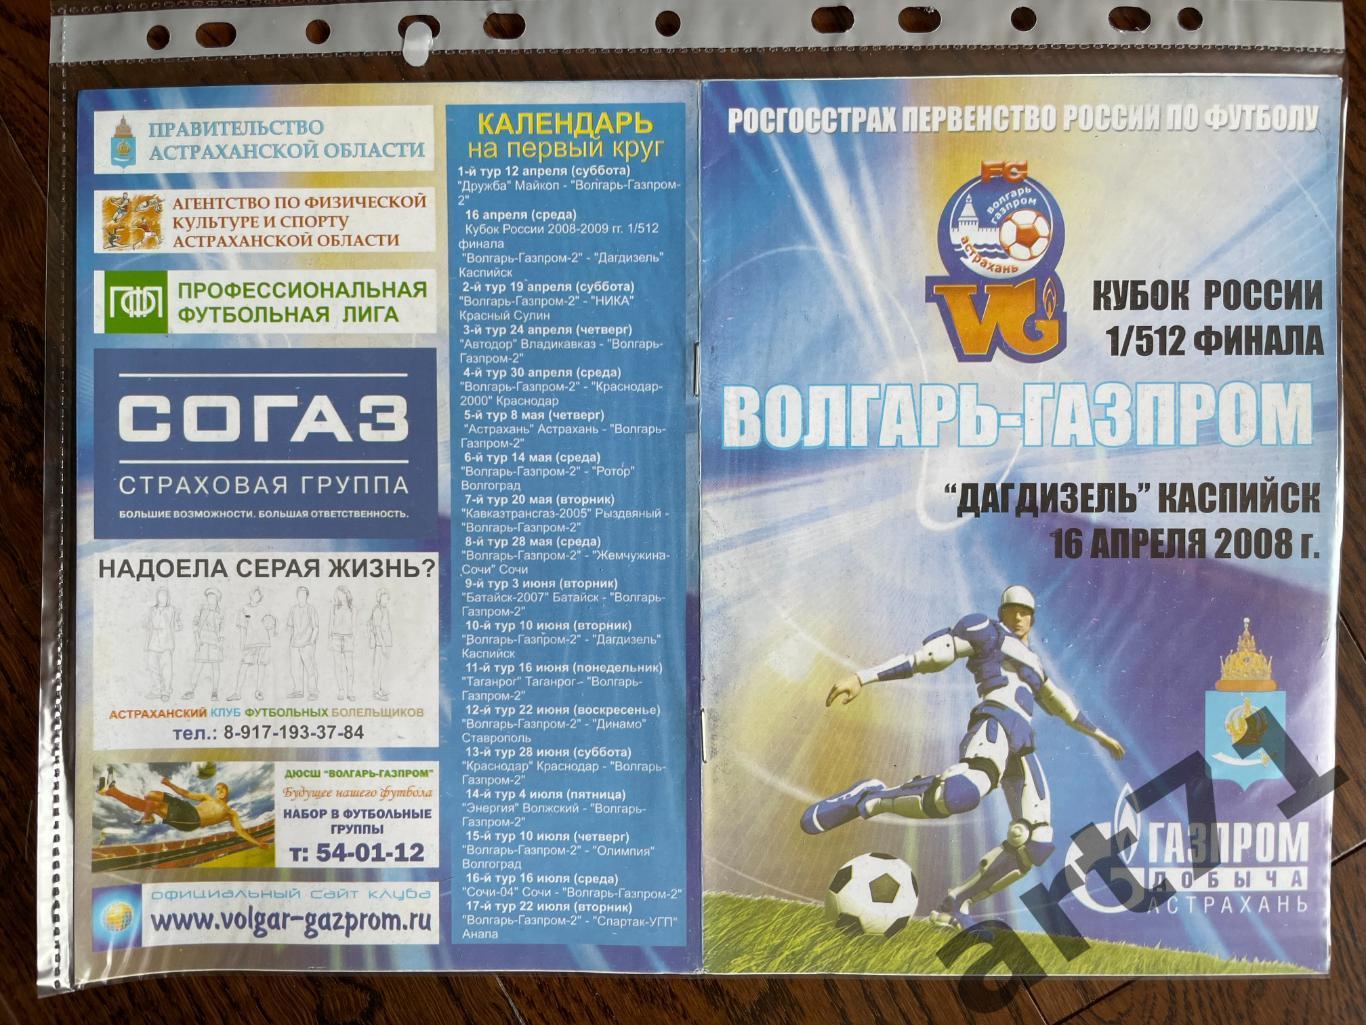 + Волгарь-Газпром Астрахань - Дагдизель Каспийск 2008 Кубок России